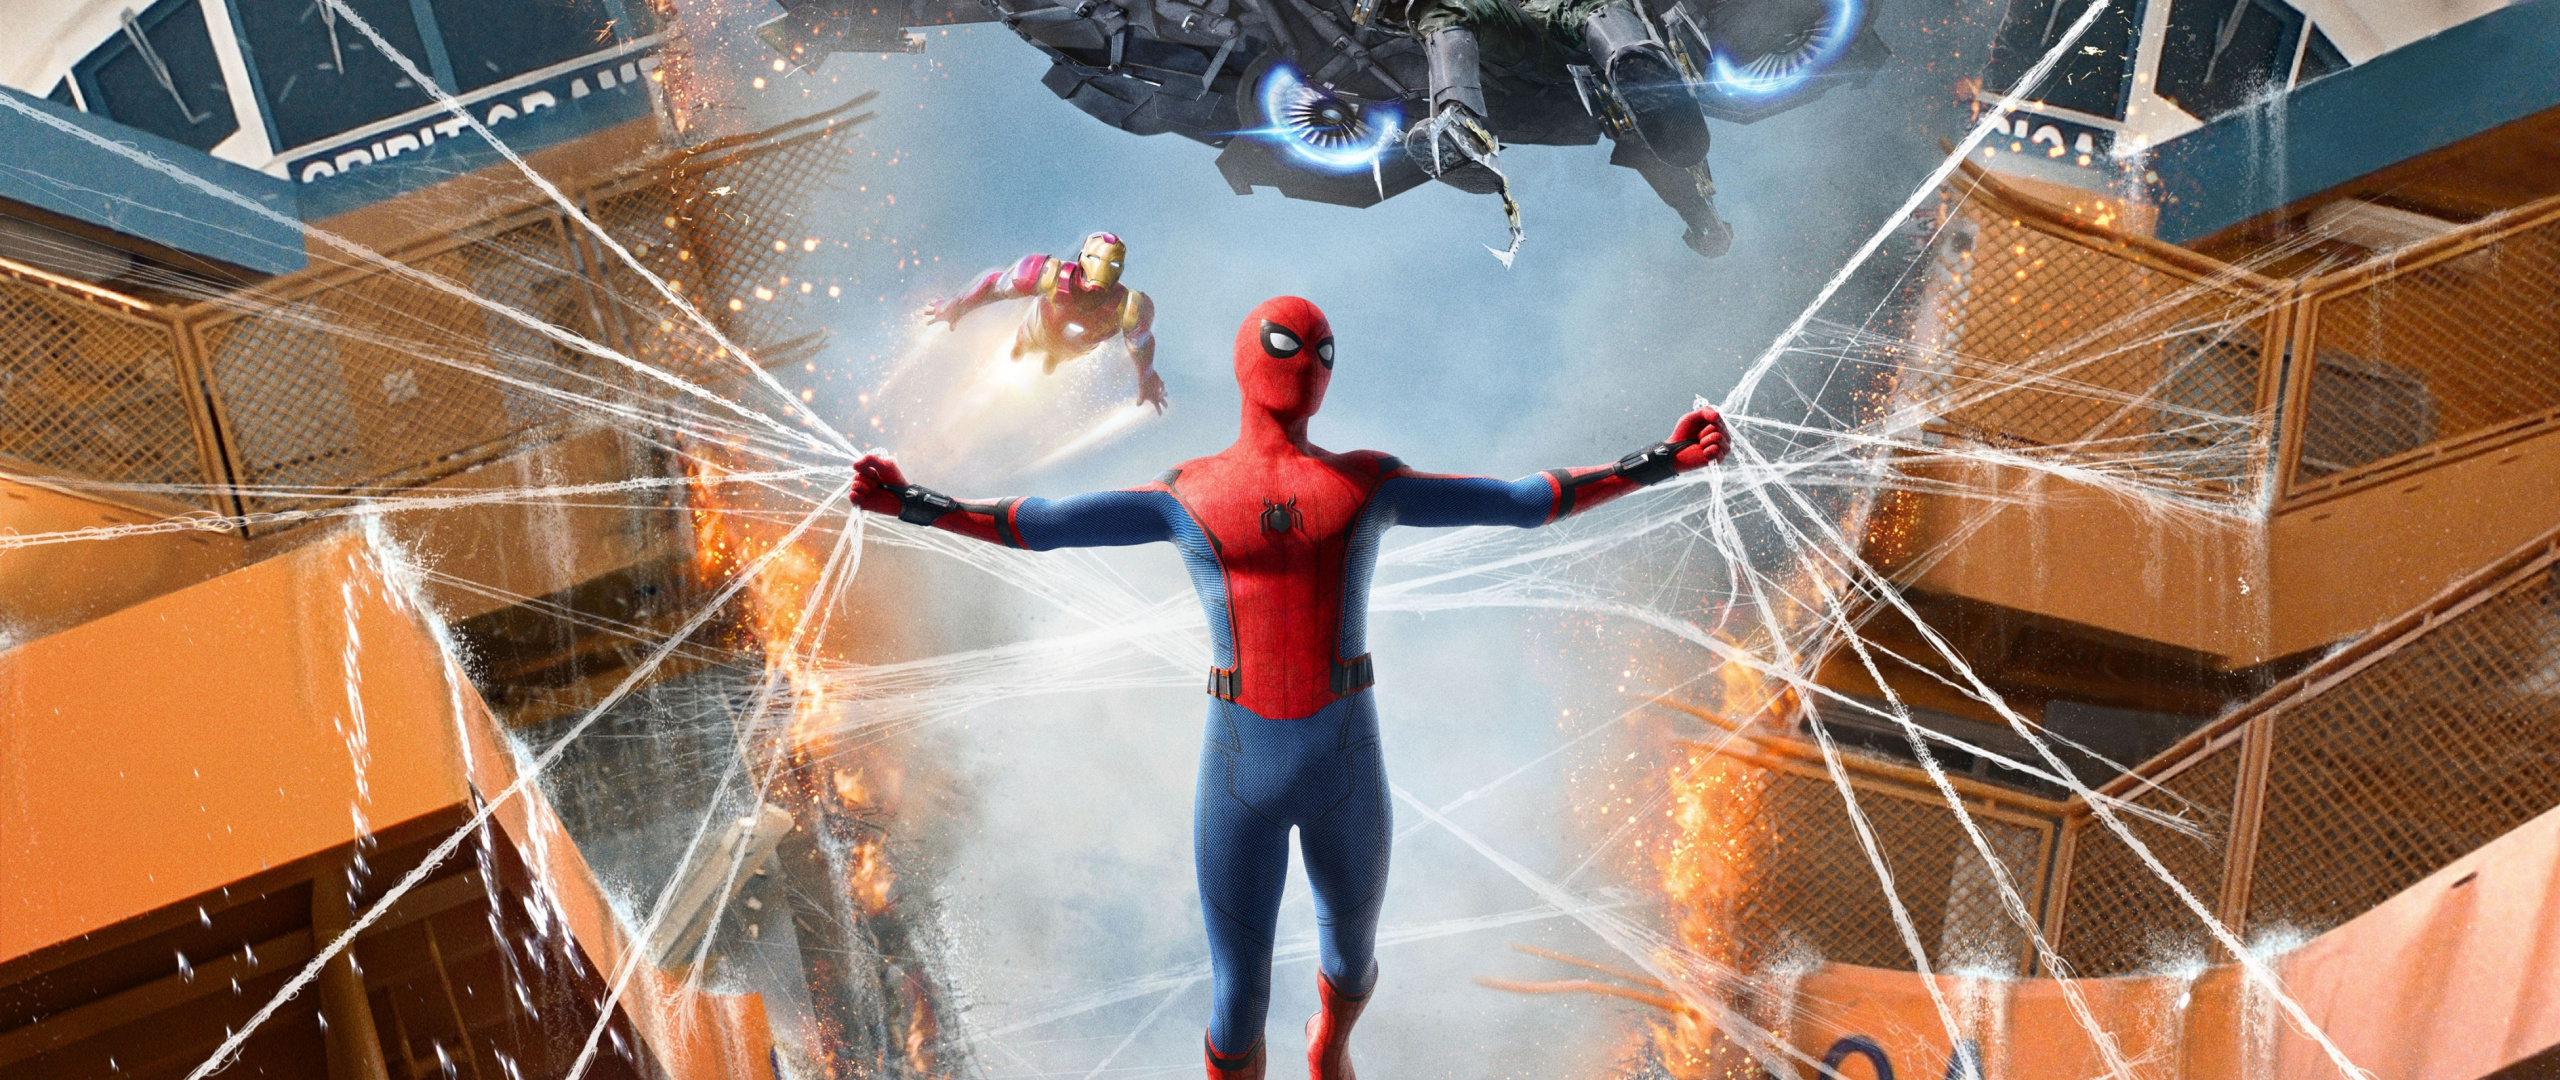 fond d'écran spiderman retour à la maison,super héros,personnage fictif,homme araignée,oeuvre de cg,figurine